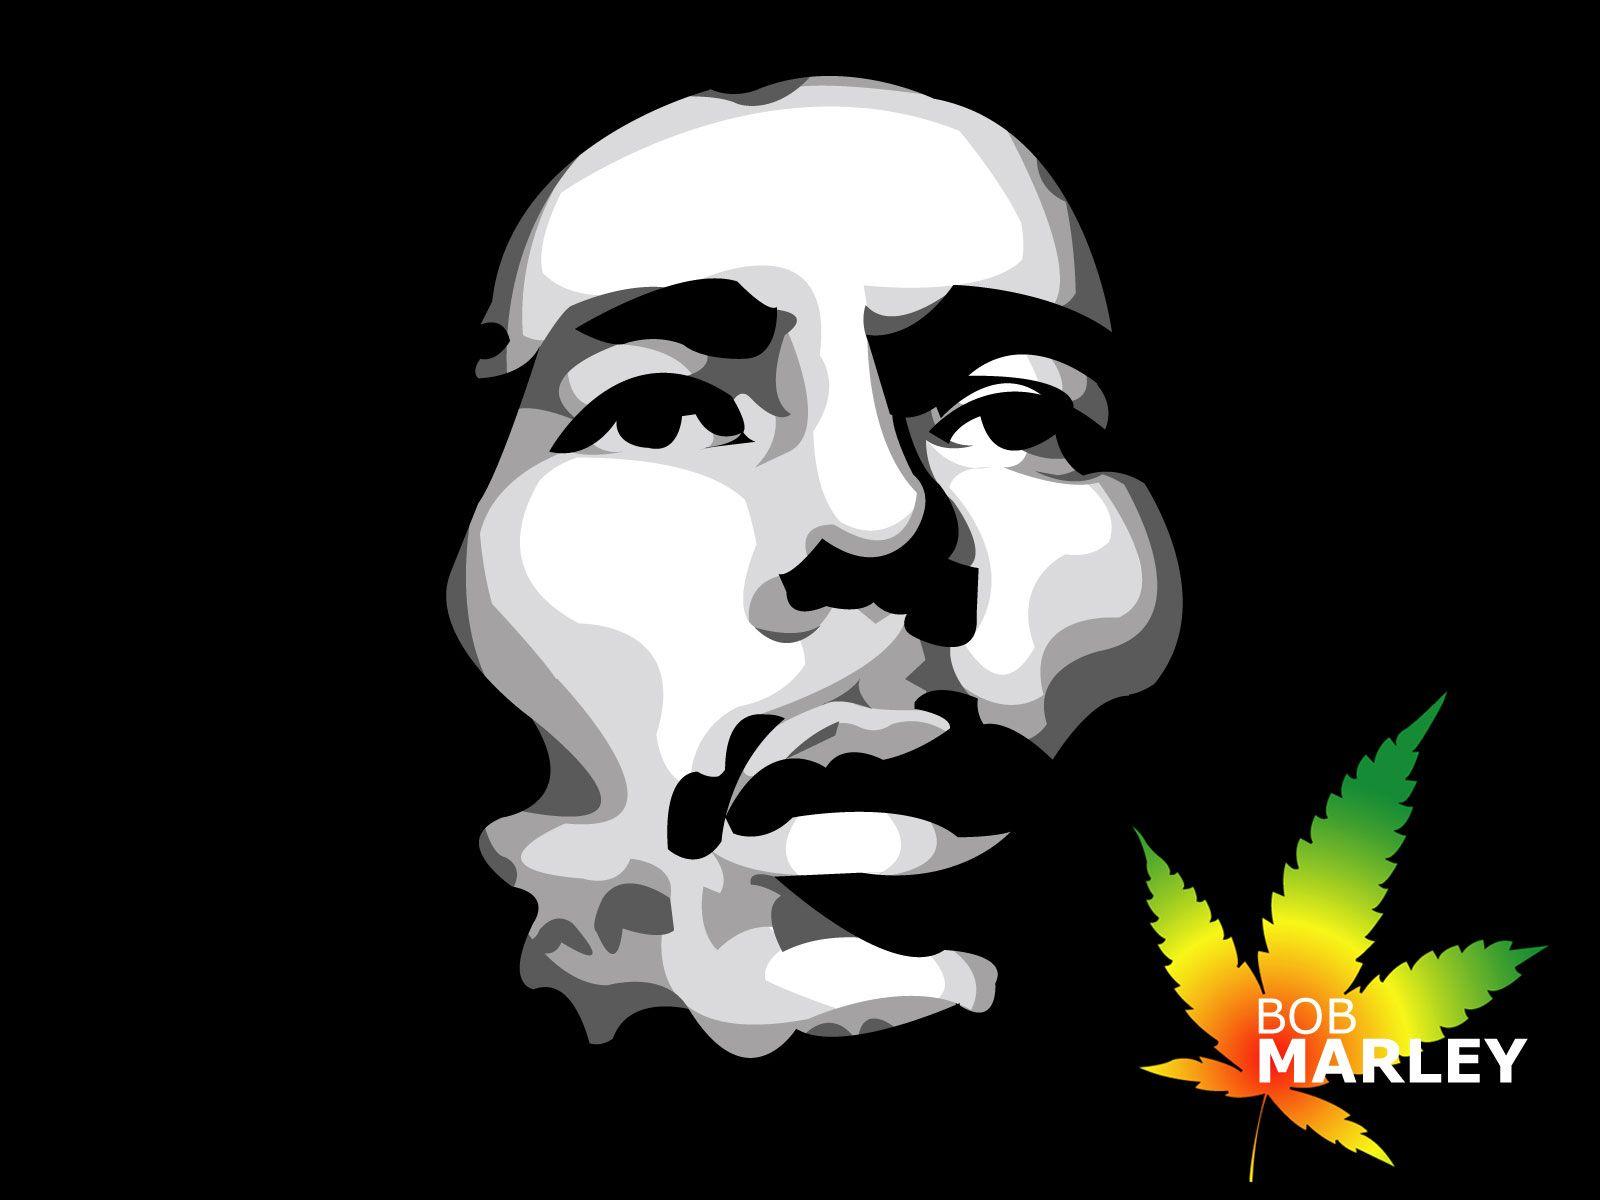 Bob Marley, Full, Hd, Wallpaper, Download, Bob Marley, Image, Free